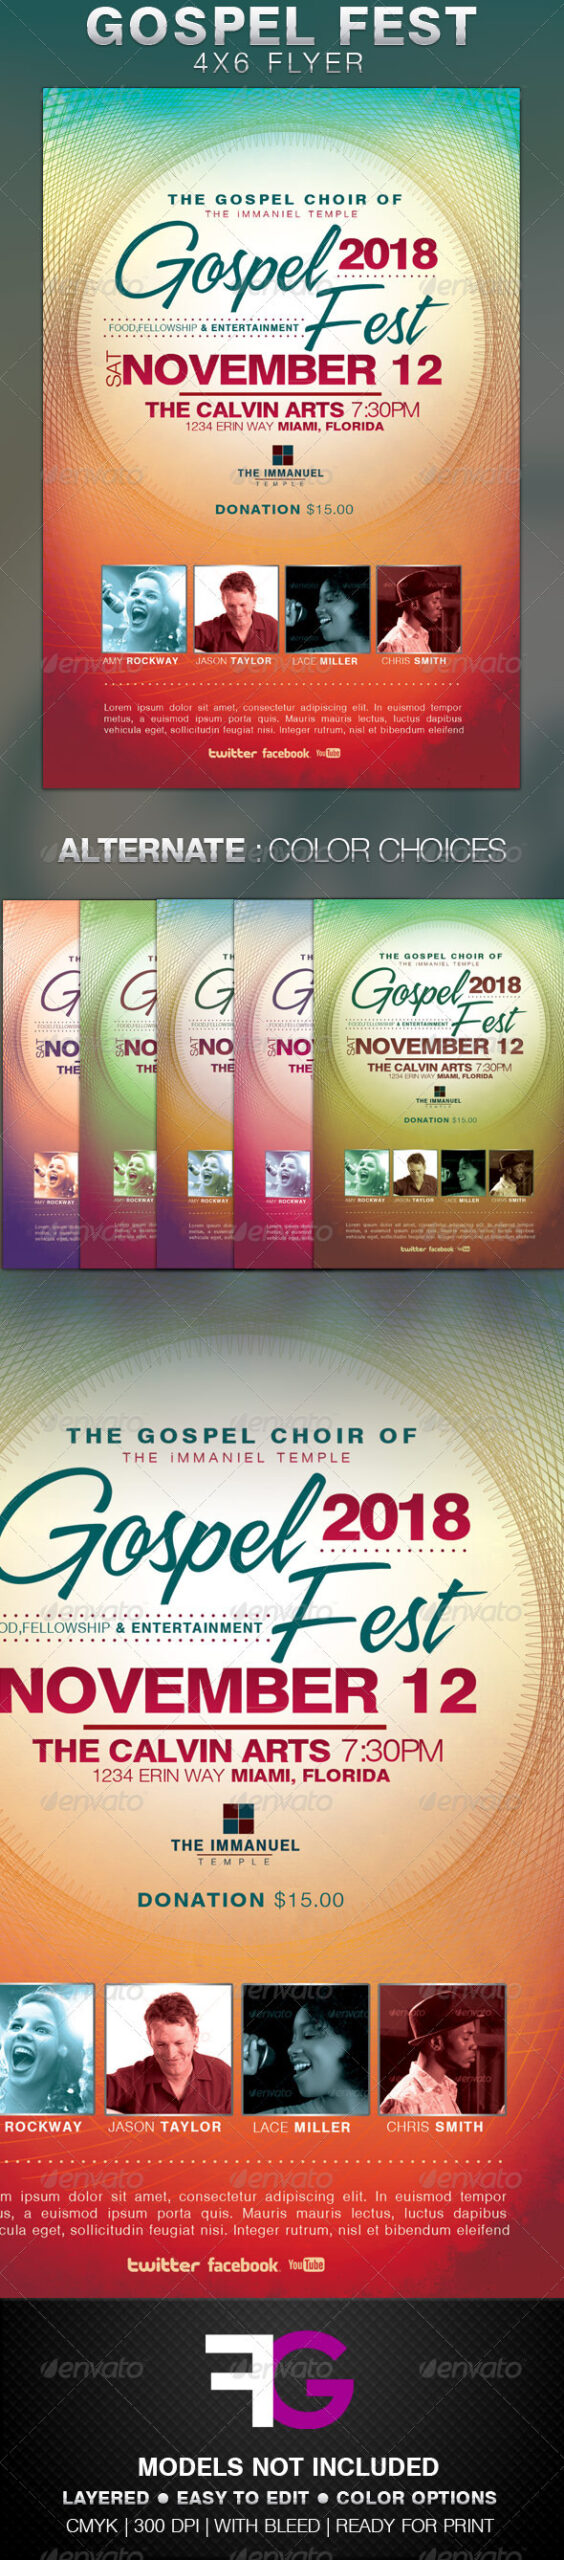 Gospel Concert Flyer Graphics, Designs & Templates With Gospel Flyer Template